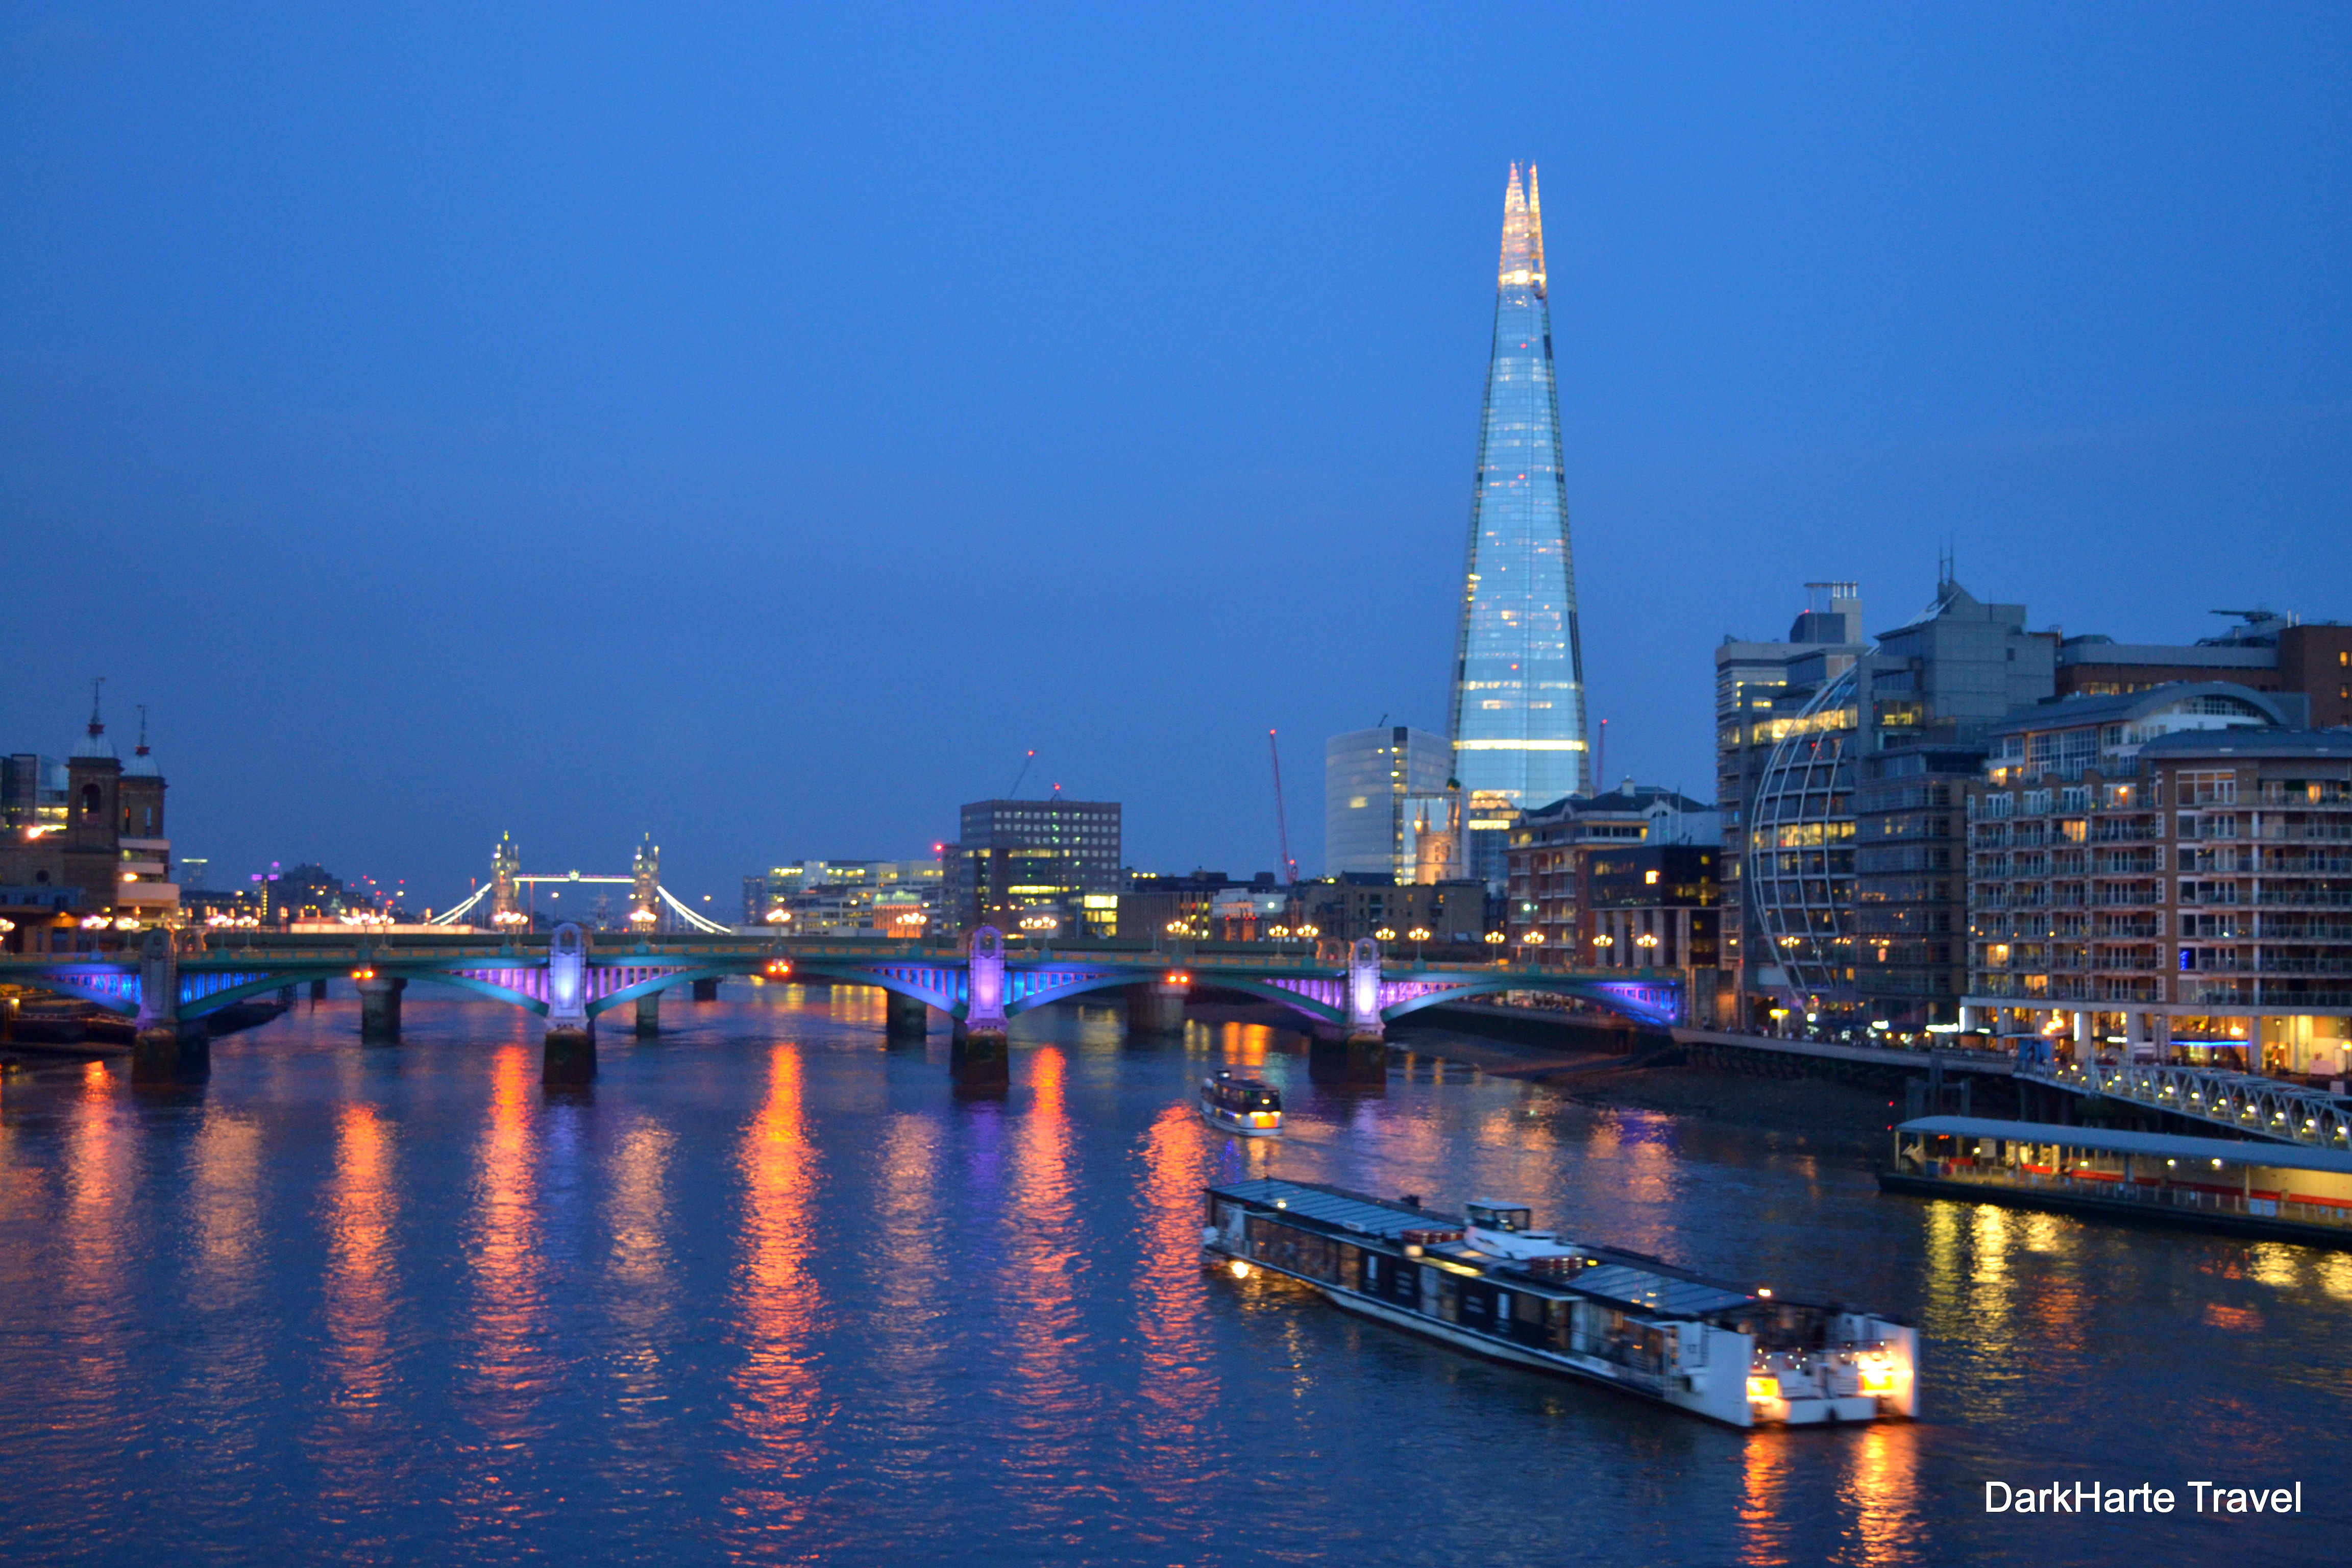 Twilight on the River Thames - Dark Heart Travel